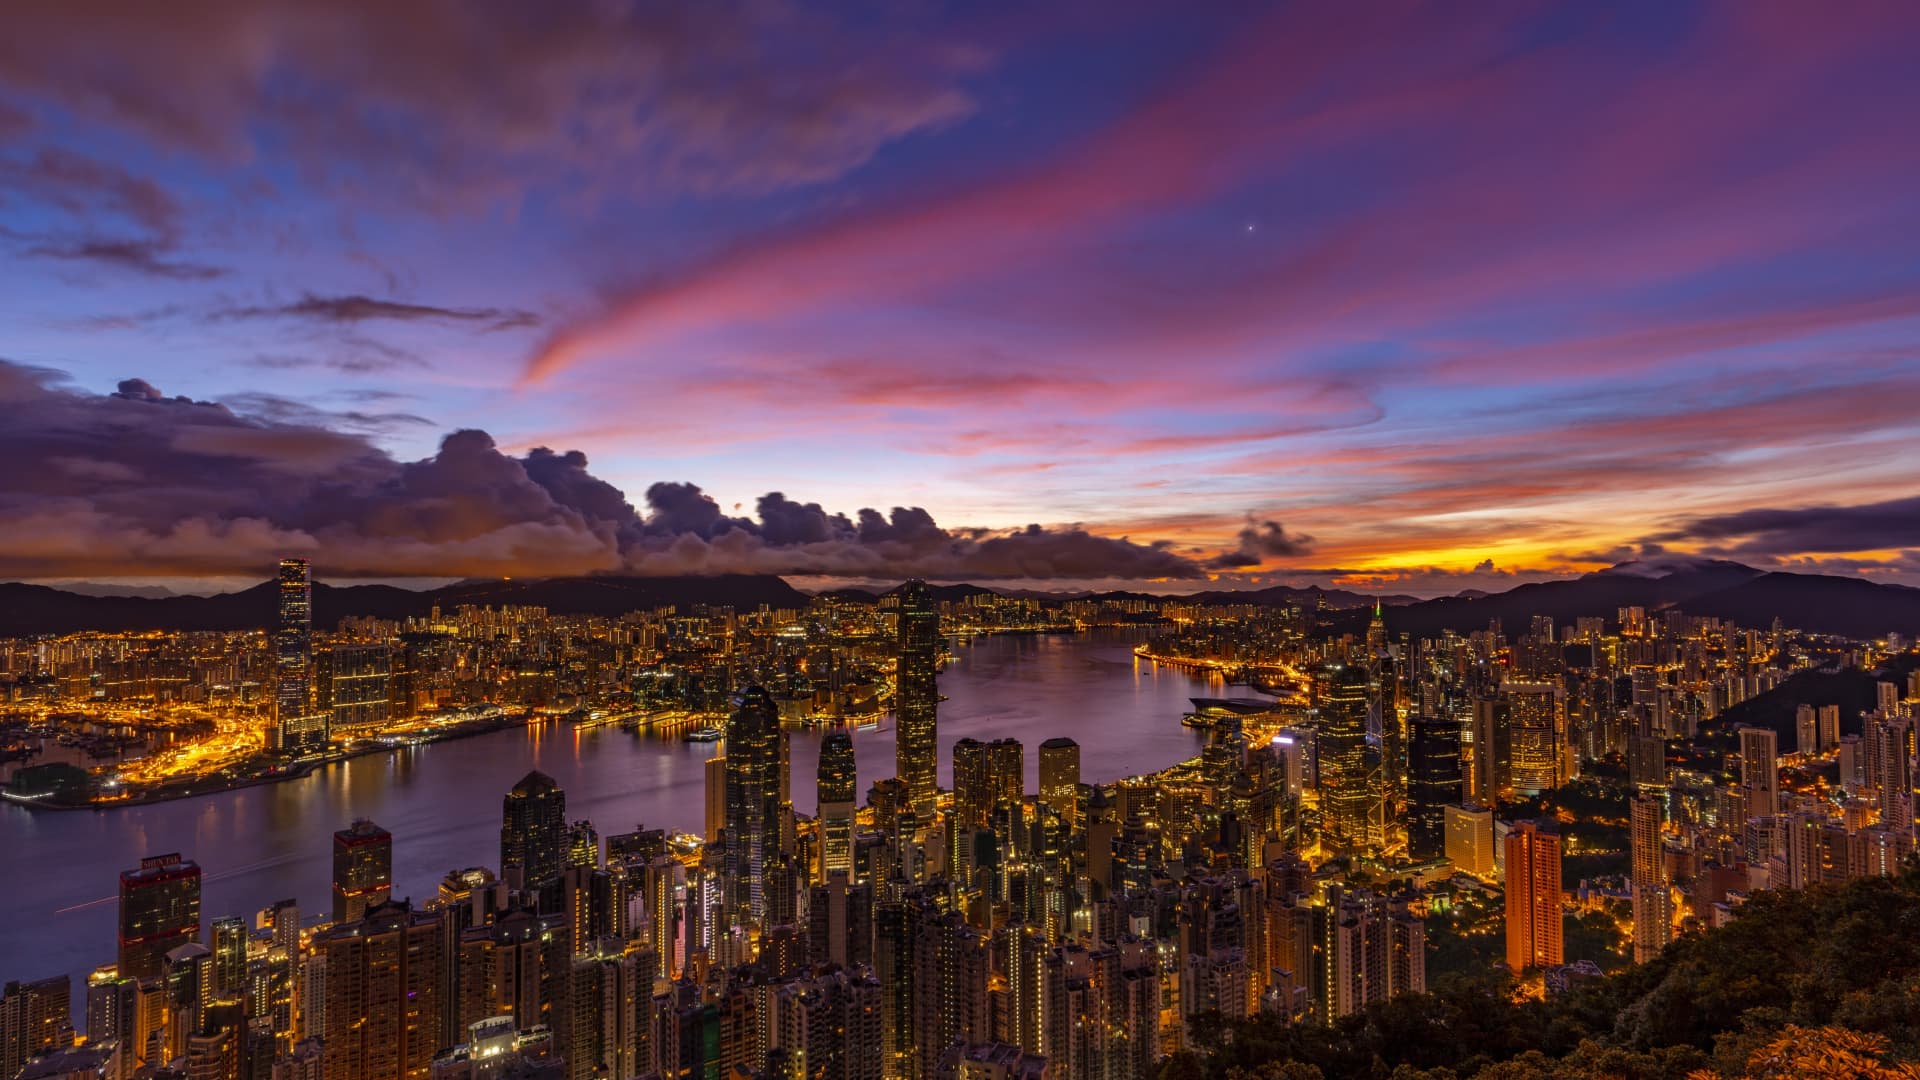 Sunrise over Hong Kong in June, 2020